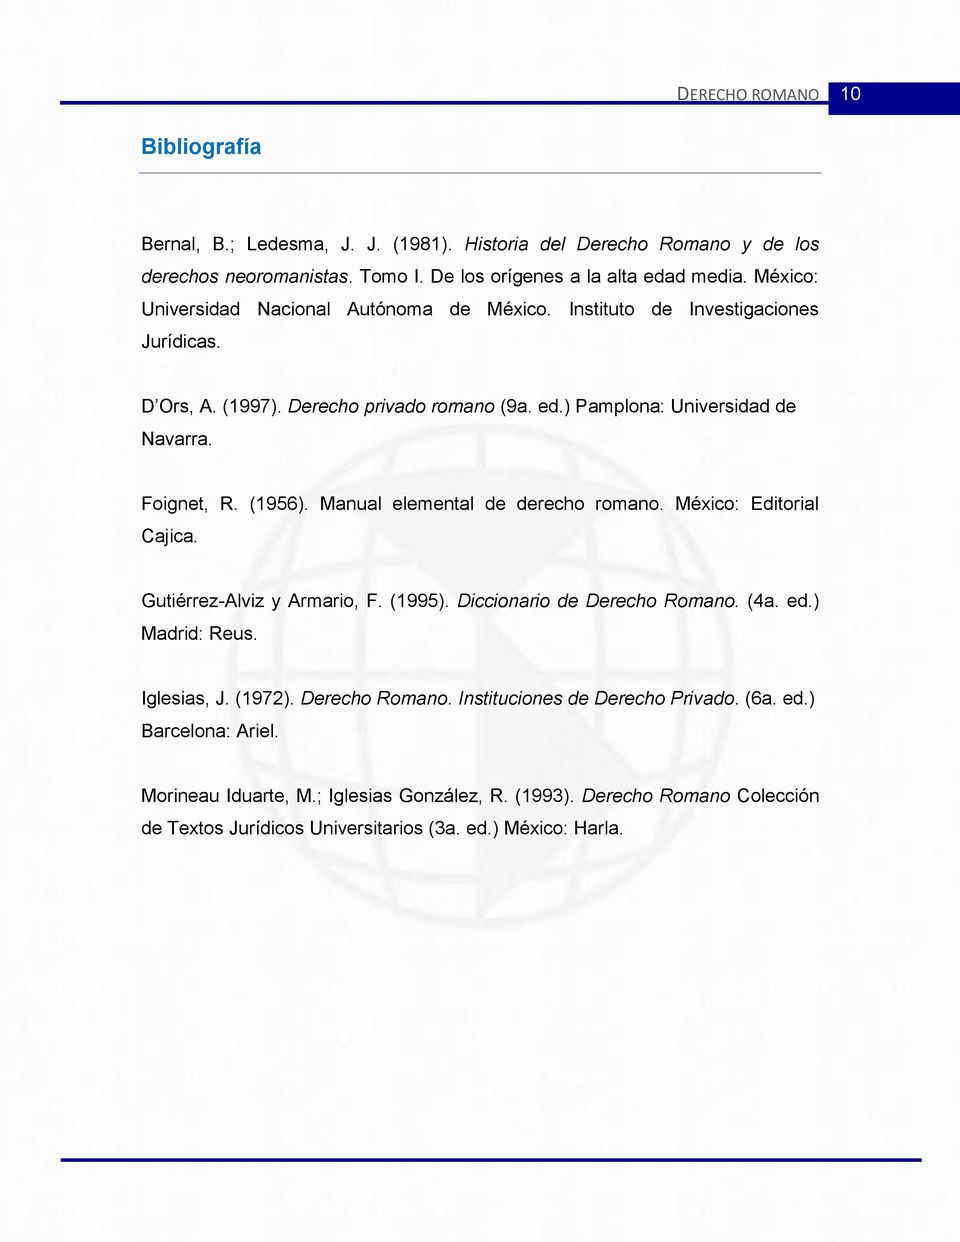 (1956). Manual elemental de derecho romano. México: Editorial Cajica. Gutiérrez-Alviz y Armario, F. (1995). Diccionario de Derecho Romano. (4a. ed.) Madrid: Reus. Iglesias, J. (1972).